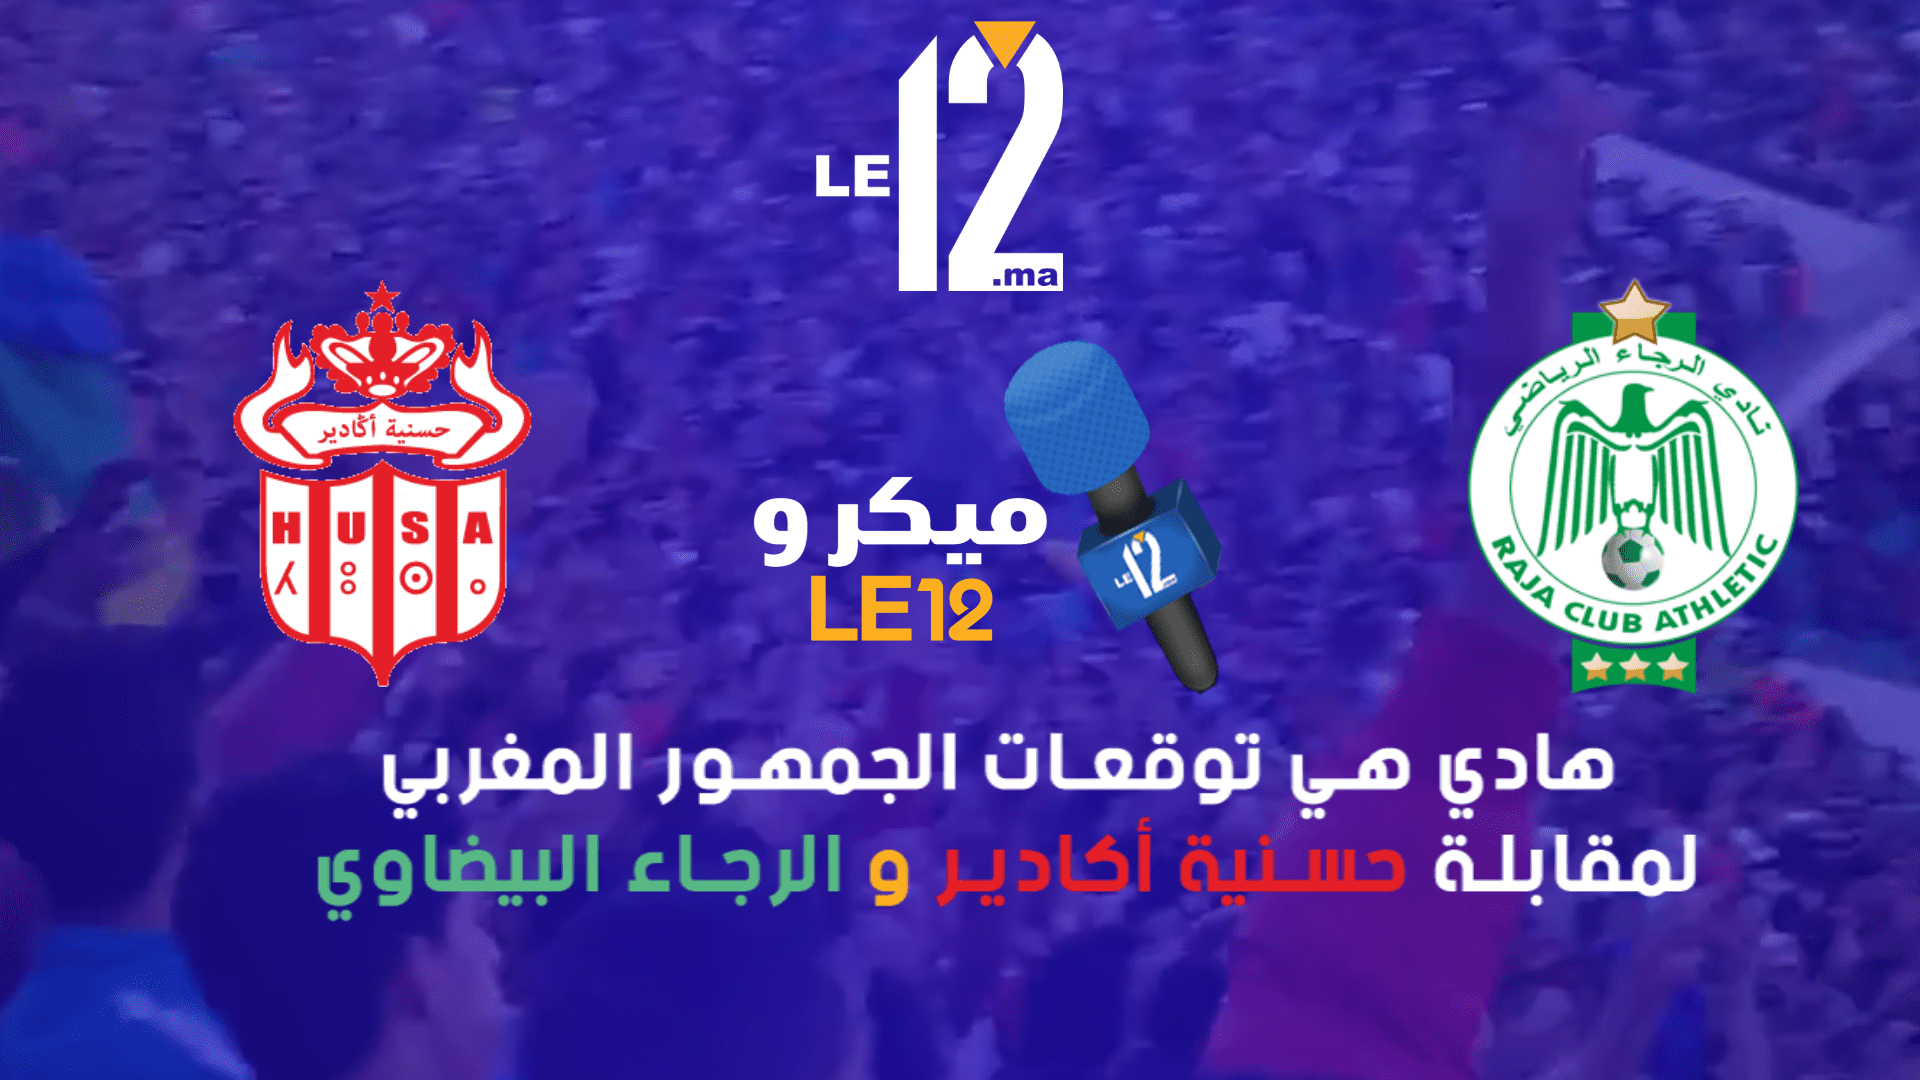 ميكرو Le12..هادي هي توقعات الجمهور لمباراة حسنية أكادير و الرجاء البيضاوي